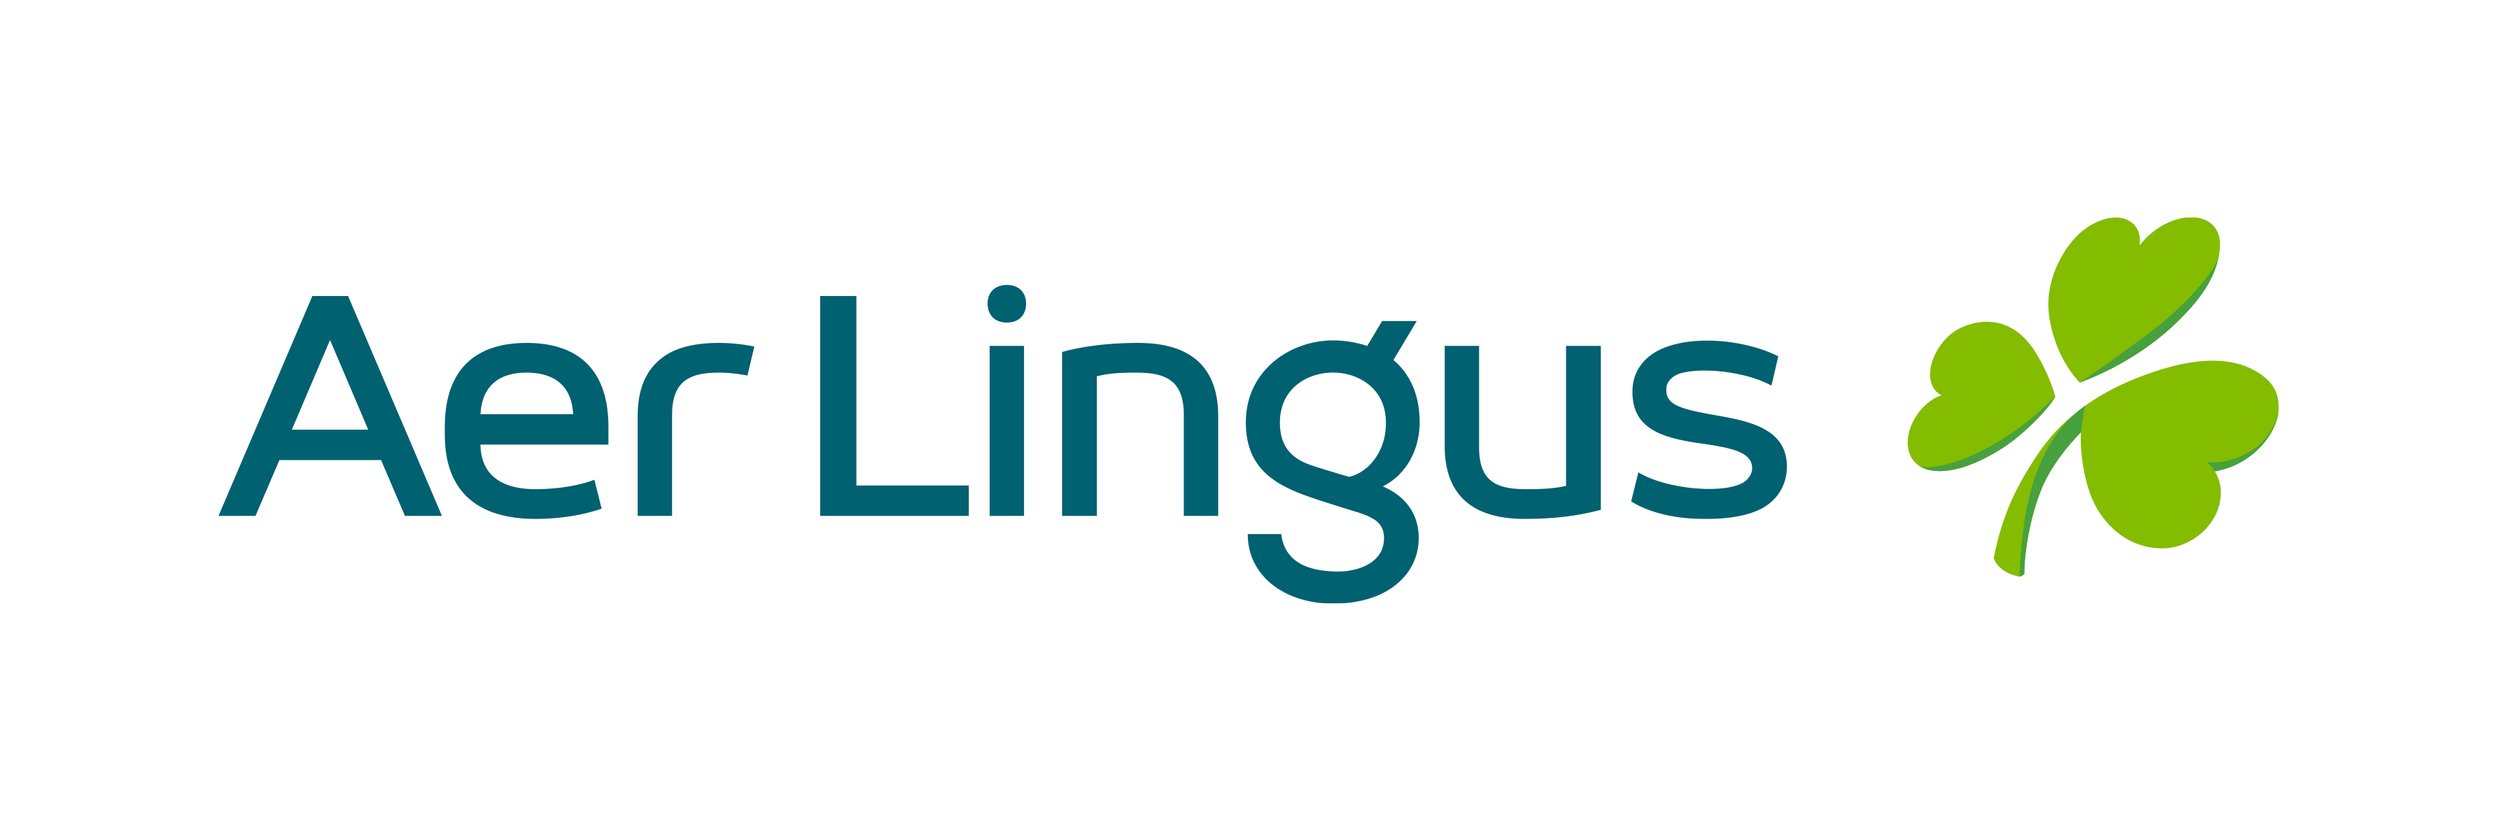 Aer_Lingus_logo.jpg